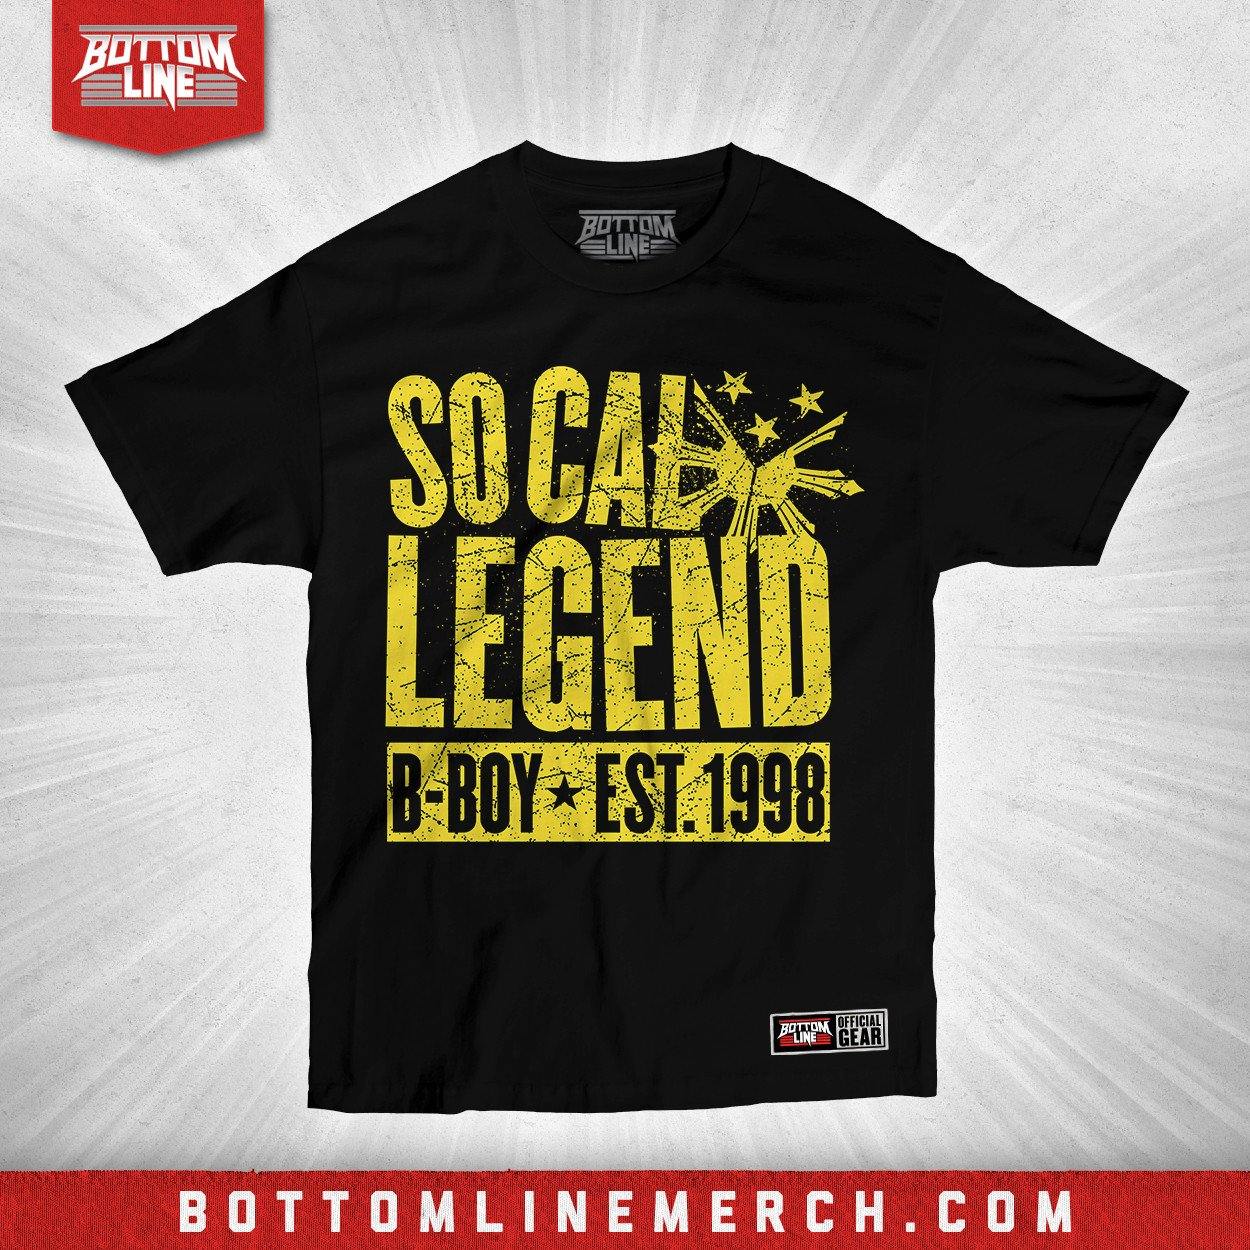 Buy Now – B-Boy "Socal Legend" Shirt – Wrestler & Wrestling Merch – Bottom Line